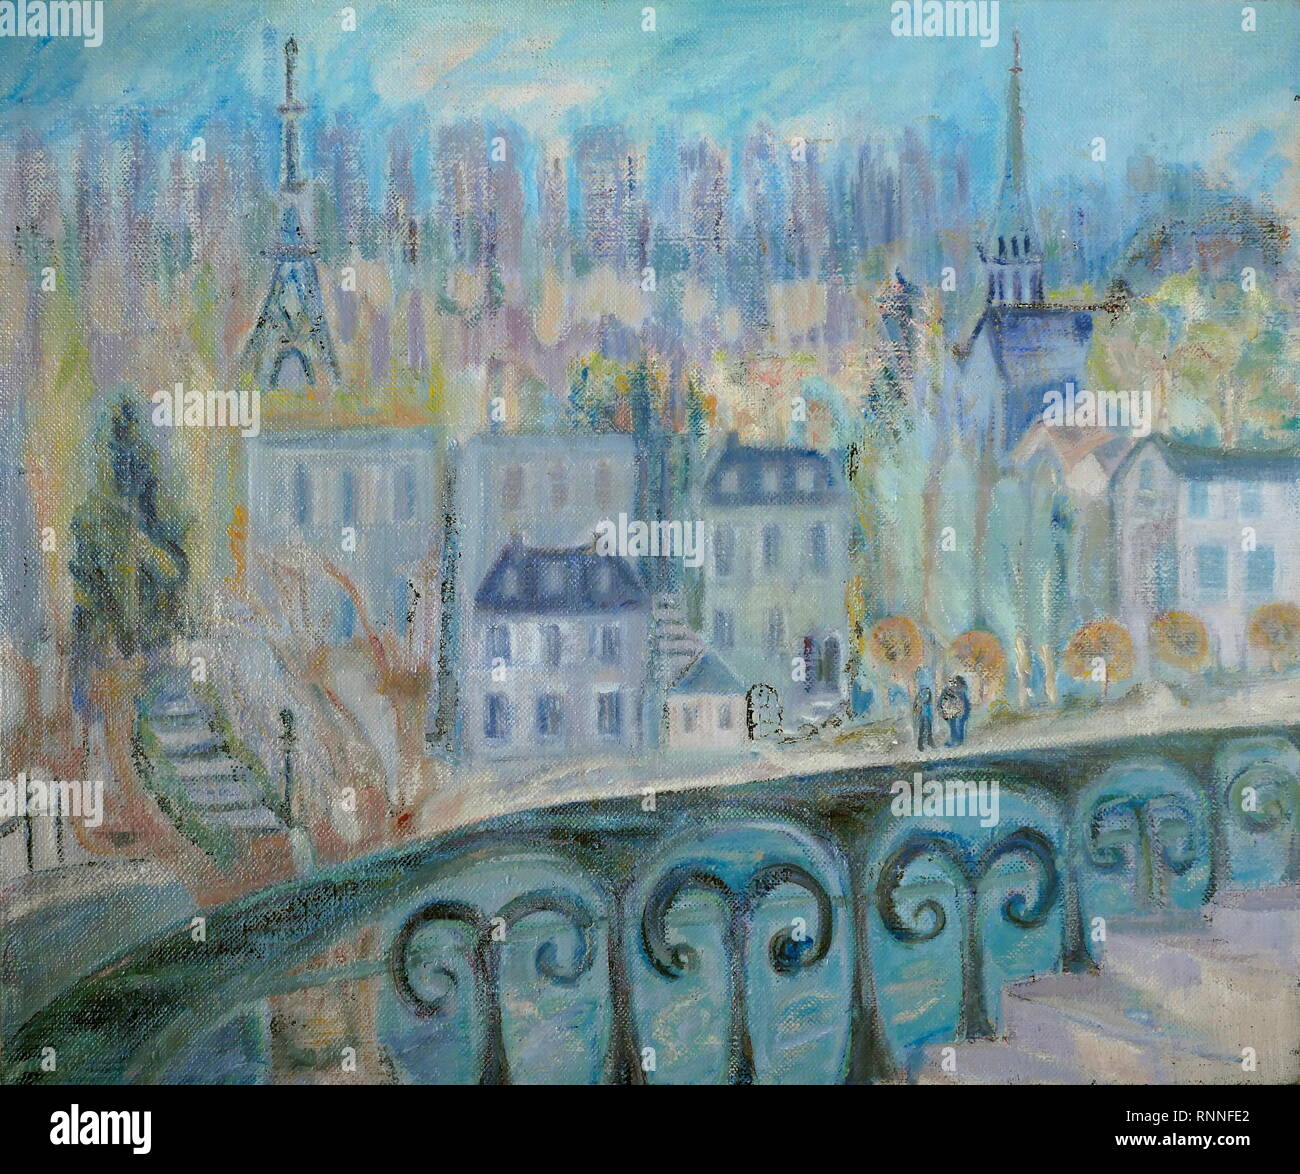 AJAXNETPHOTO. 2019. ENGLAND. T.G. Masaryk EASTLAND KUNST - ANSICHT VON PARIS SAINT CLOUD, FRANKREICH, gemalt von T.G.EASTLAND; große Öl auf Leinwand. 20. JAHRHUNDERT impressionistischen Stil arbeiten, datiert von 1984. Malerei UNSIGNED. Foto: © IN DIESEM DIGITALEN KOPIE DER URSPRÜNGLICHEN ARBEIT/AJAX NEWS & FEATURE SERVICE. Quelle: private Sammlung. REF: GX 191702_20011 Stockfoto